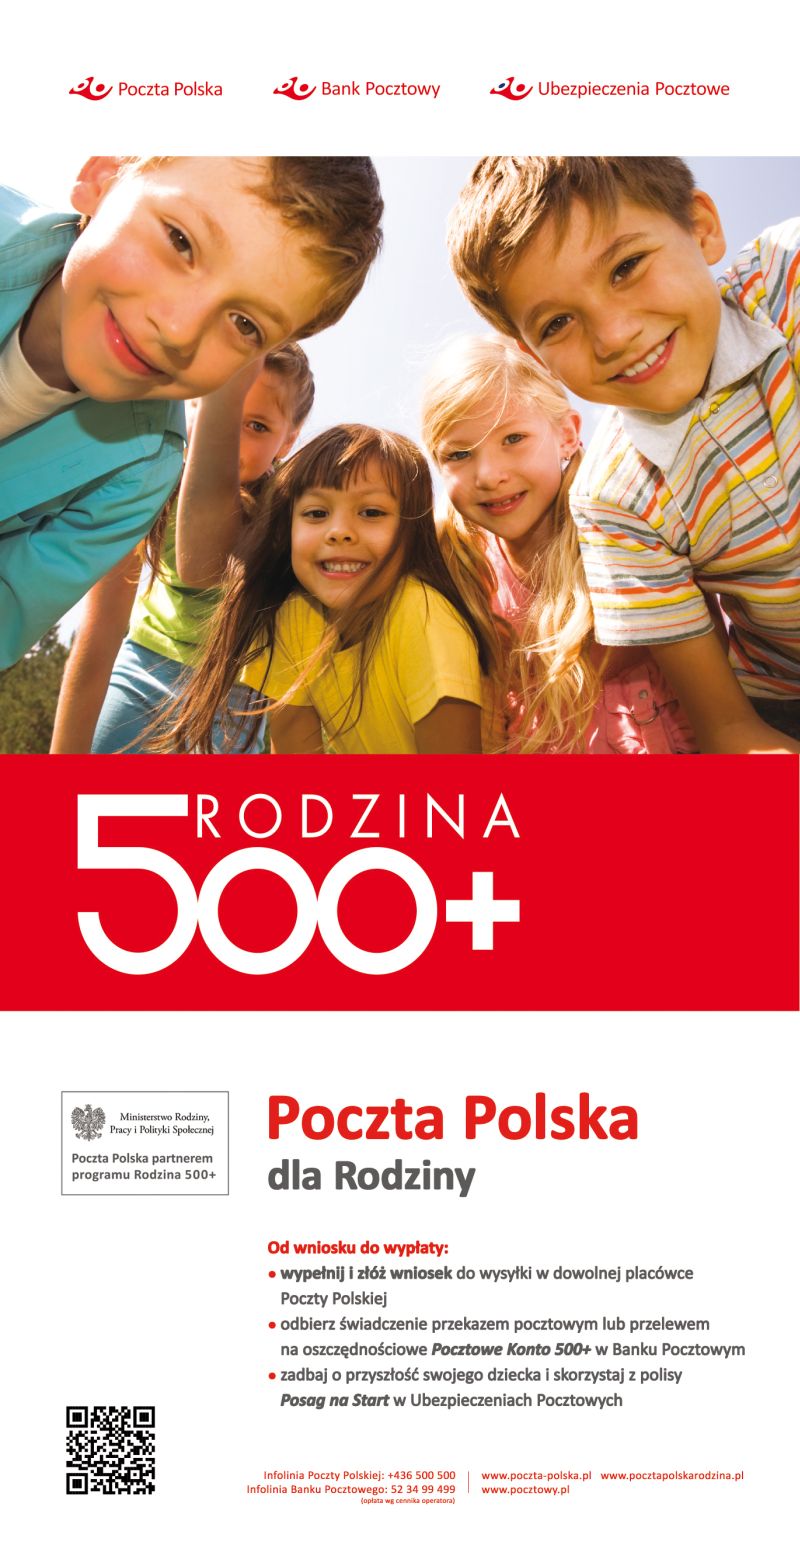 Poczta Polska - program RODZINA 500+